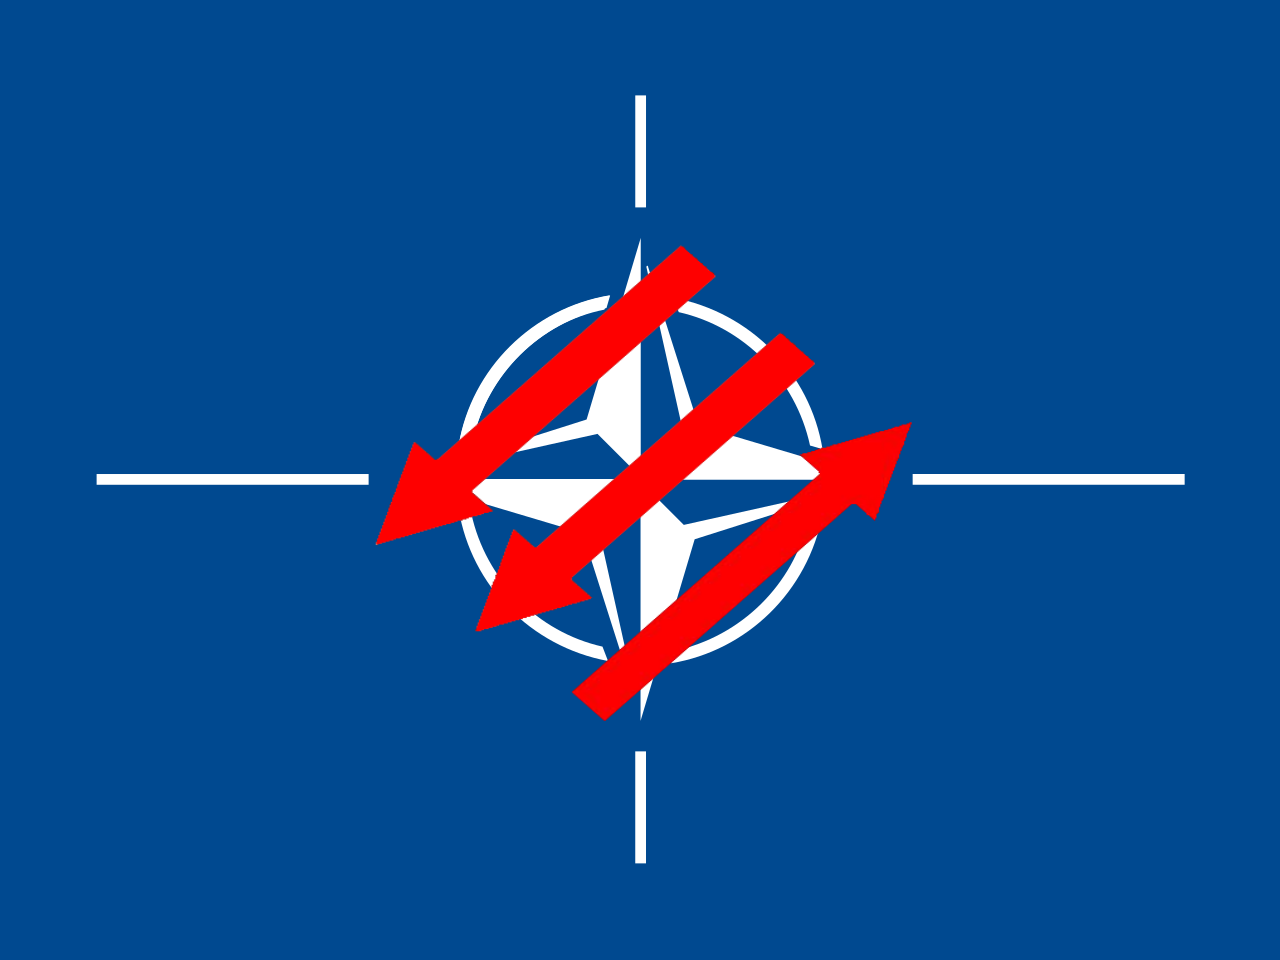 Anti-NATO Left flag Blank Meme Template